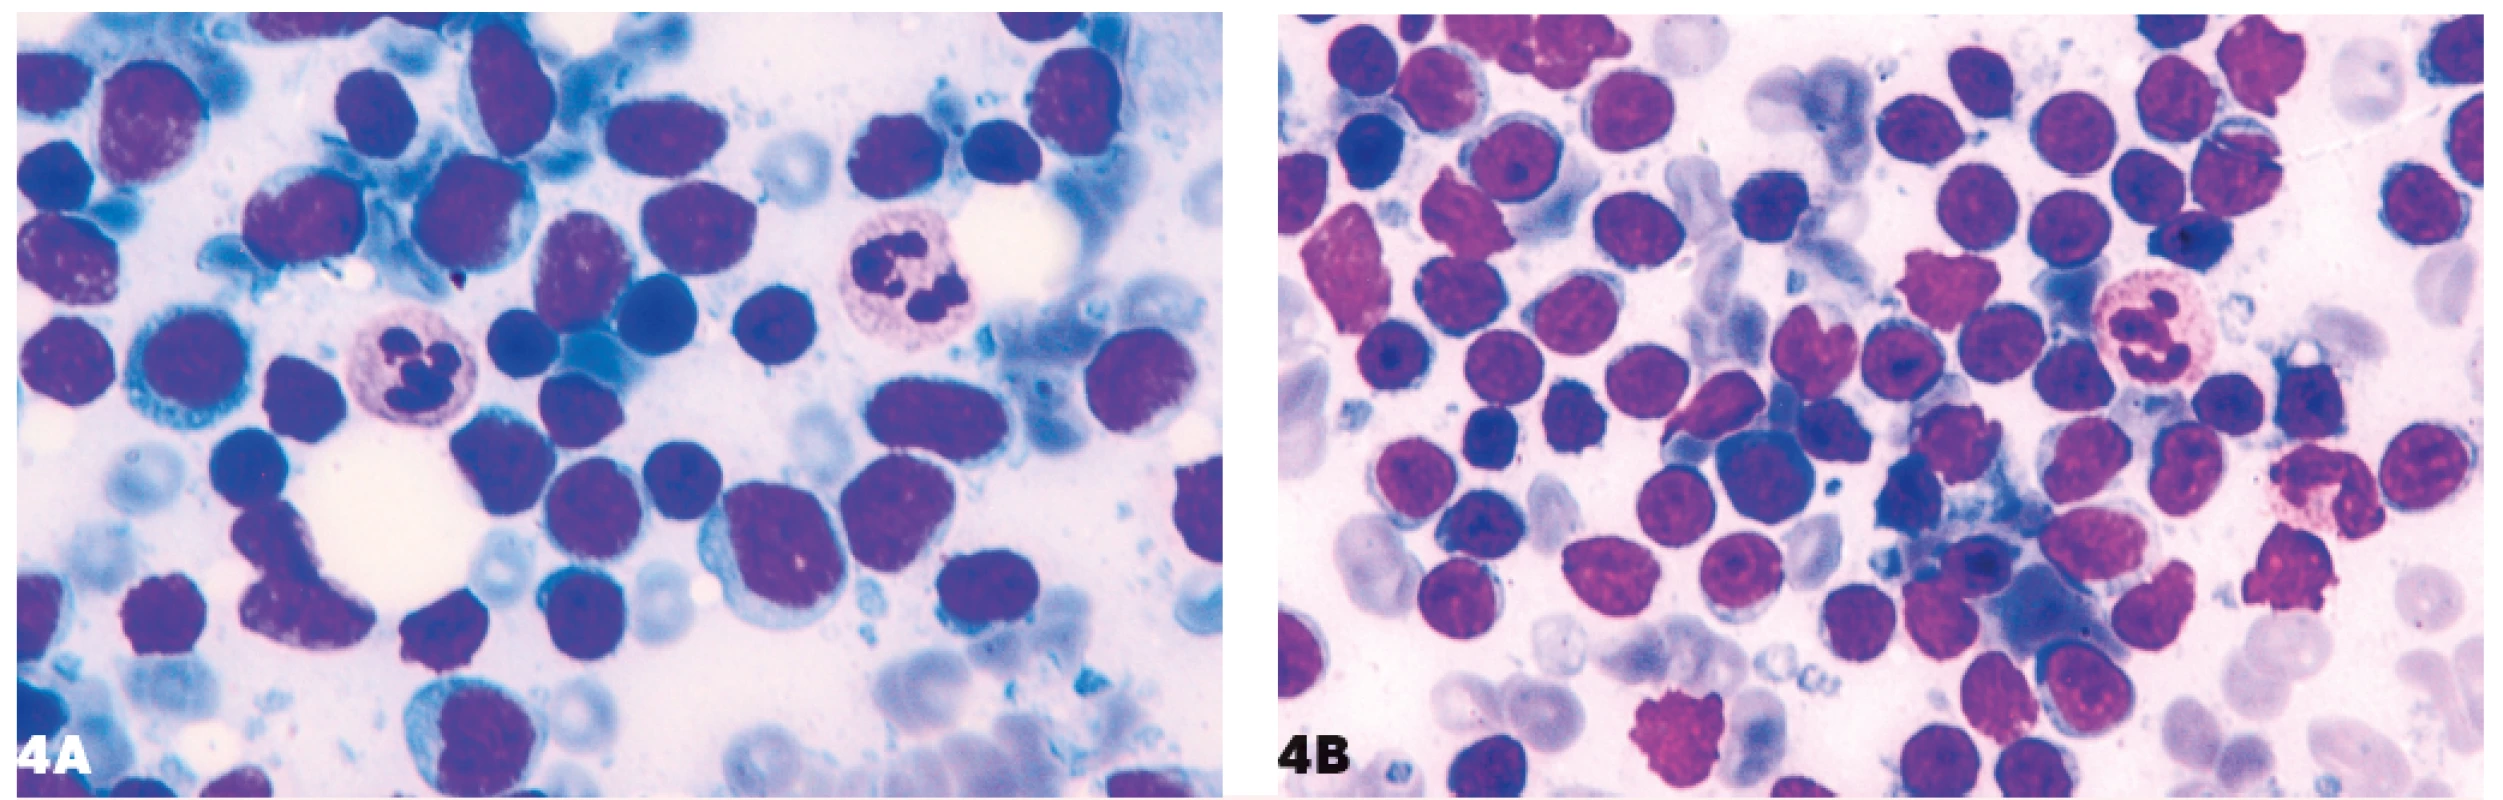 Podobnosť lymfocytov malobunkového lymfómu a lymfocytov pri nešpecifickej lymfadenitíde<br>
4A – folikulový lymfóm, 4B – nešpecifická lymfadenitída.